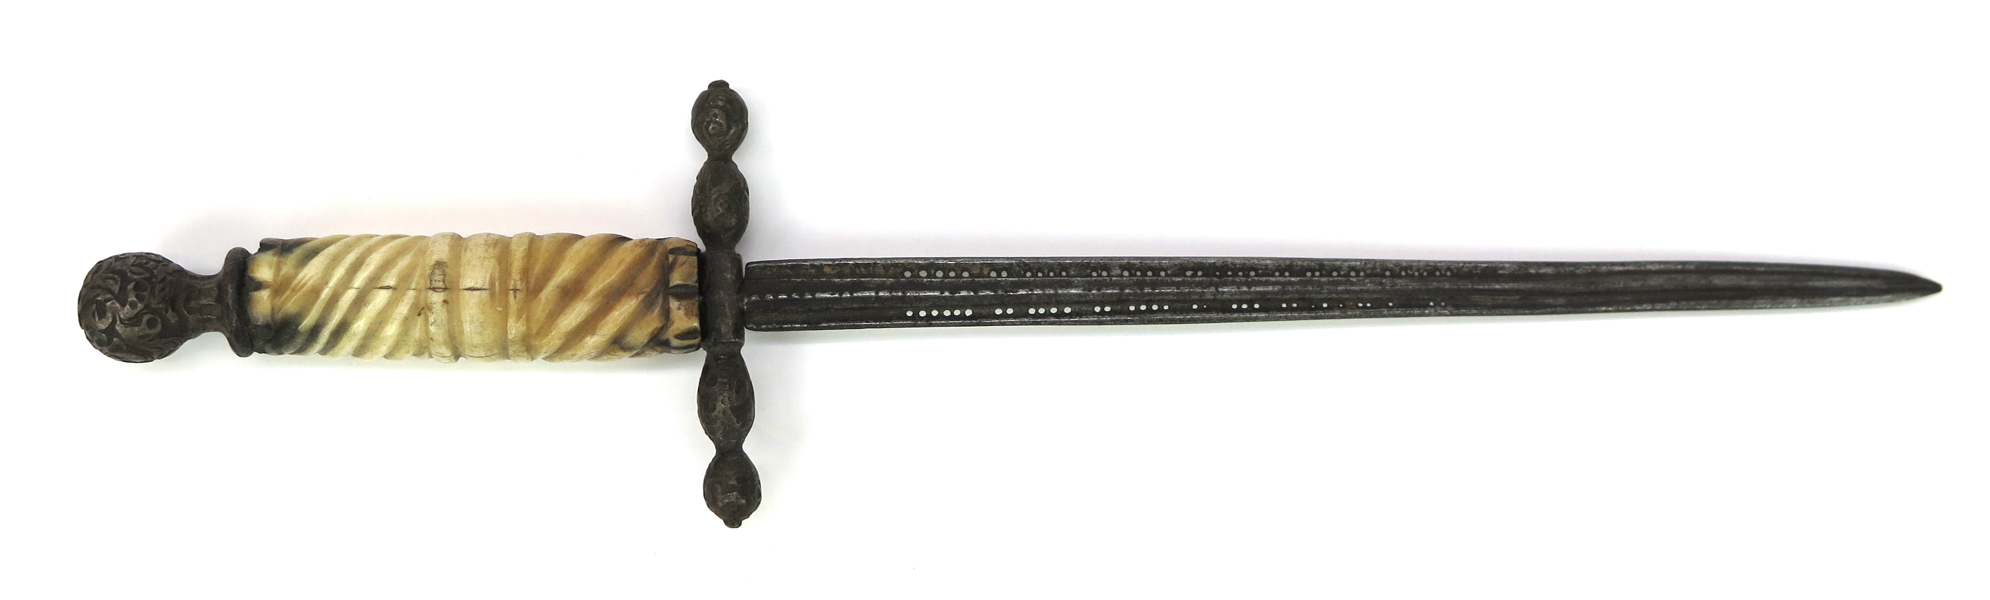 Vänsterhandsdolk, stål med benskaft, så kallad stiletto, 1600-tal, l 27 cm_36374a_lg.jpeg